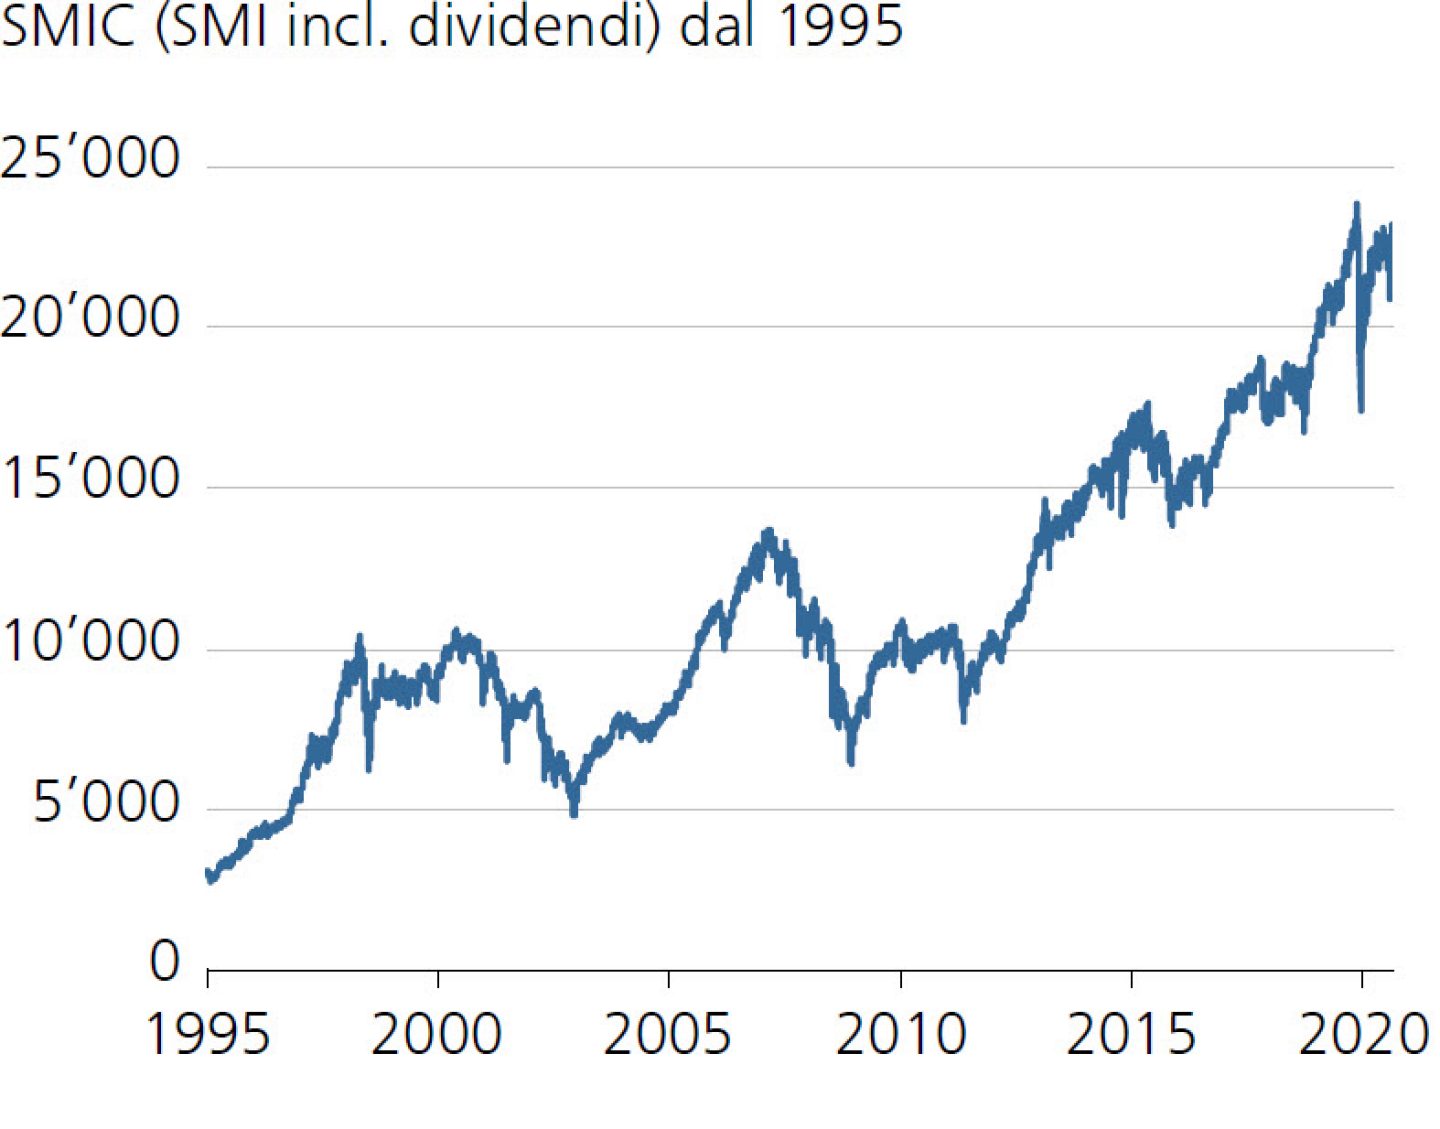 SMIC (SMI incl. dividendi) dal 1995